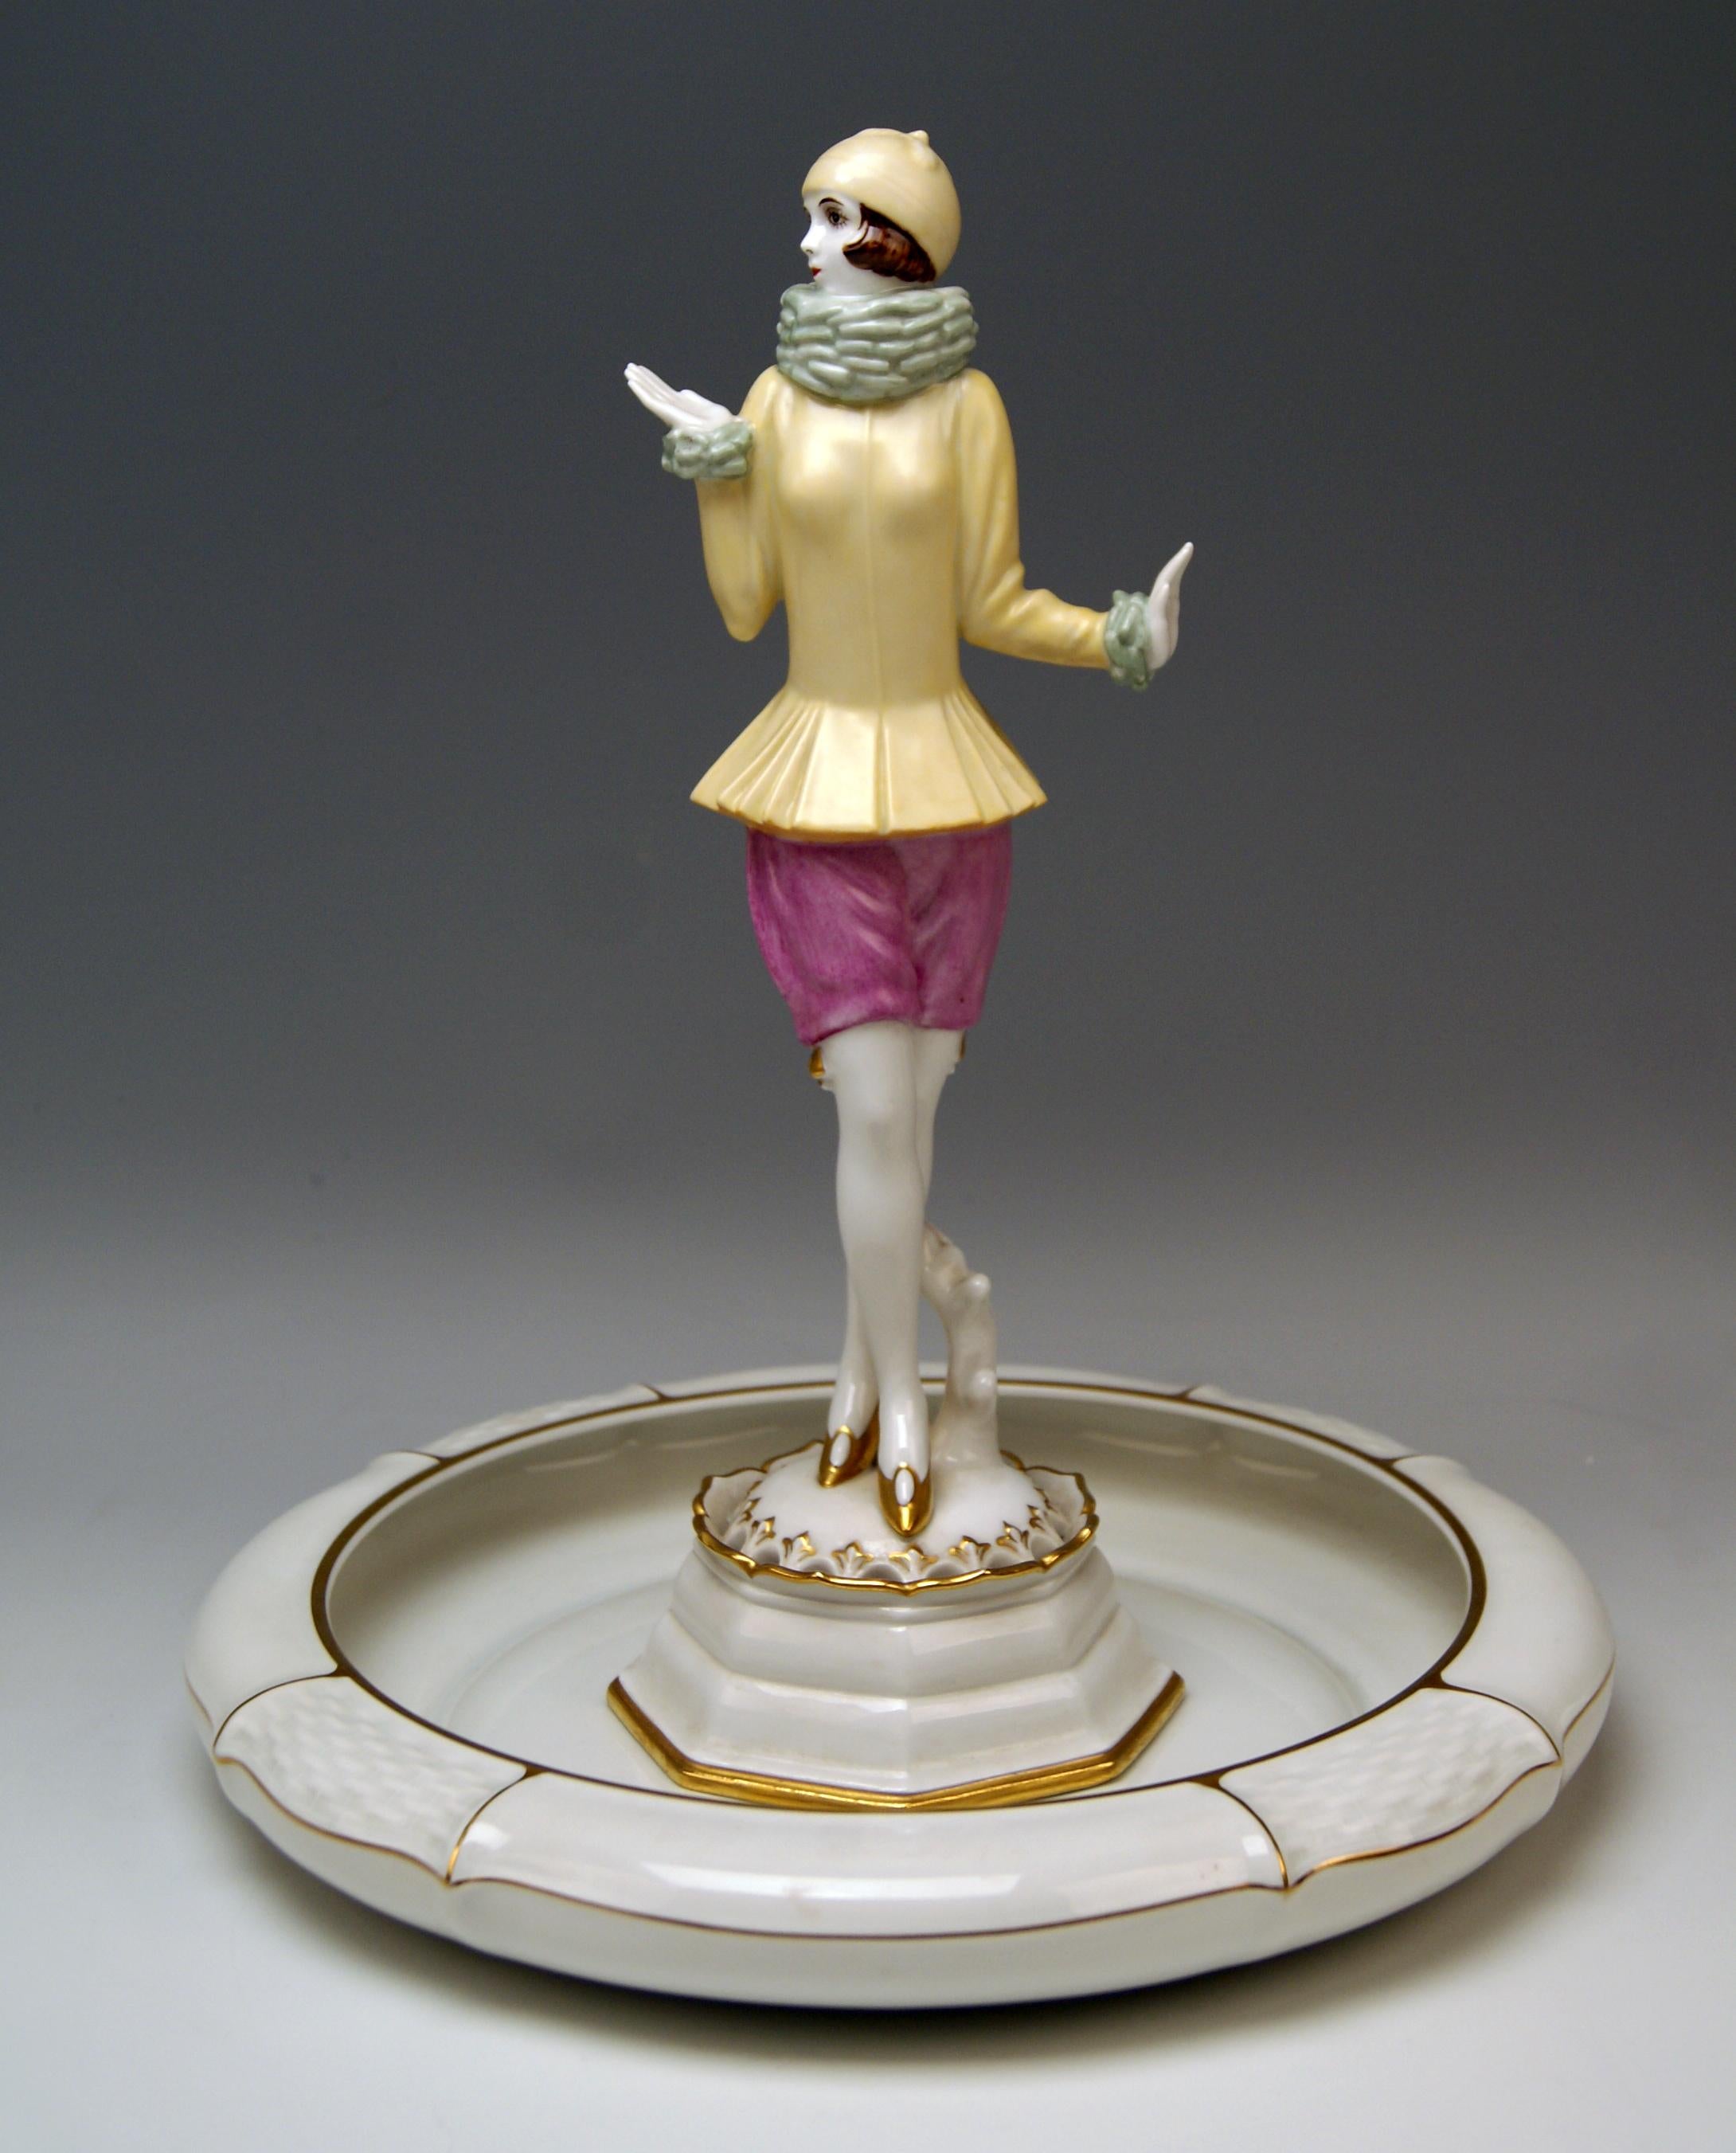 Damenfigur 'YVONNE'
Eine schlanke Frau mit CAP steht aufrecht, gekleidet in ein besonderes Kostüm: Eine enge gelbe Jacke und ein Wollschal, der den Hals der Frau bedeckt, sowie eine kurze fliederfarbene Hose (Hotpants). Die Frau trägt goldene